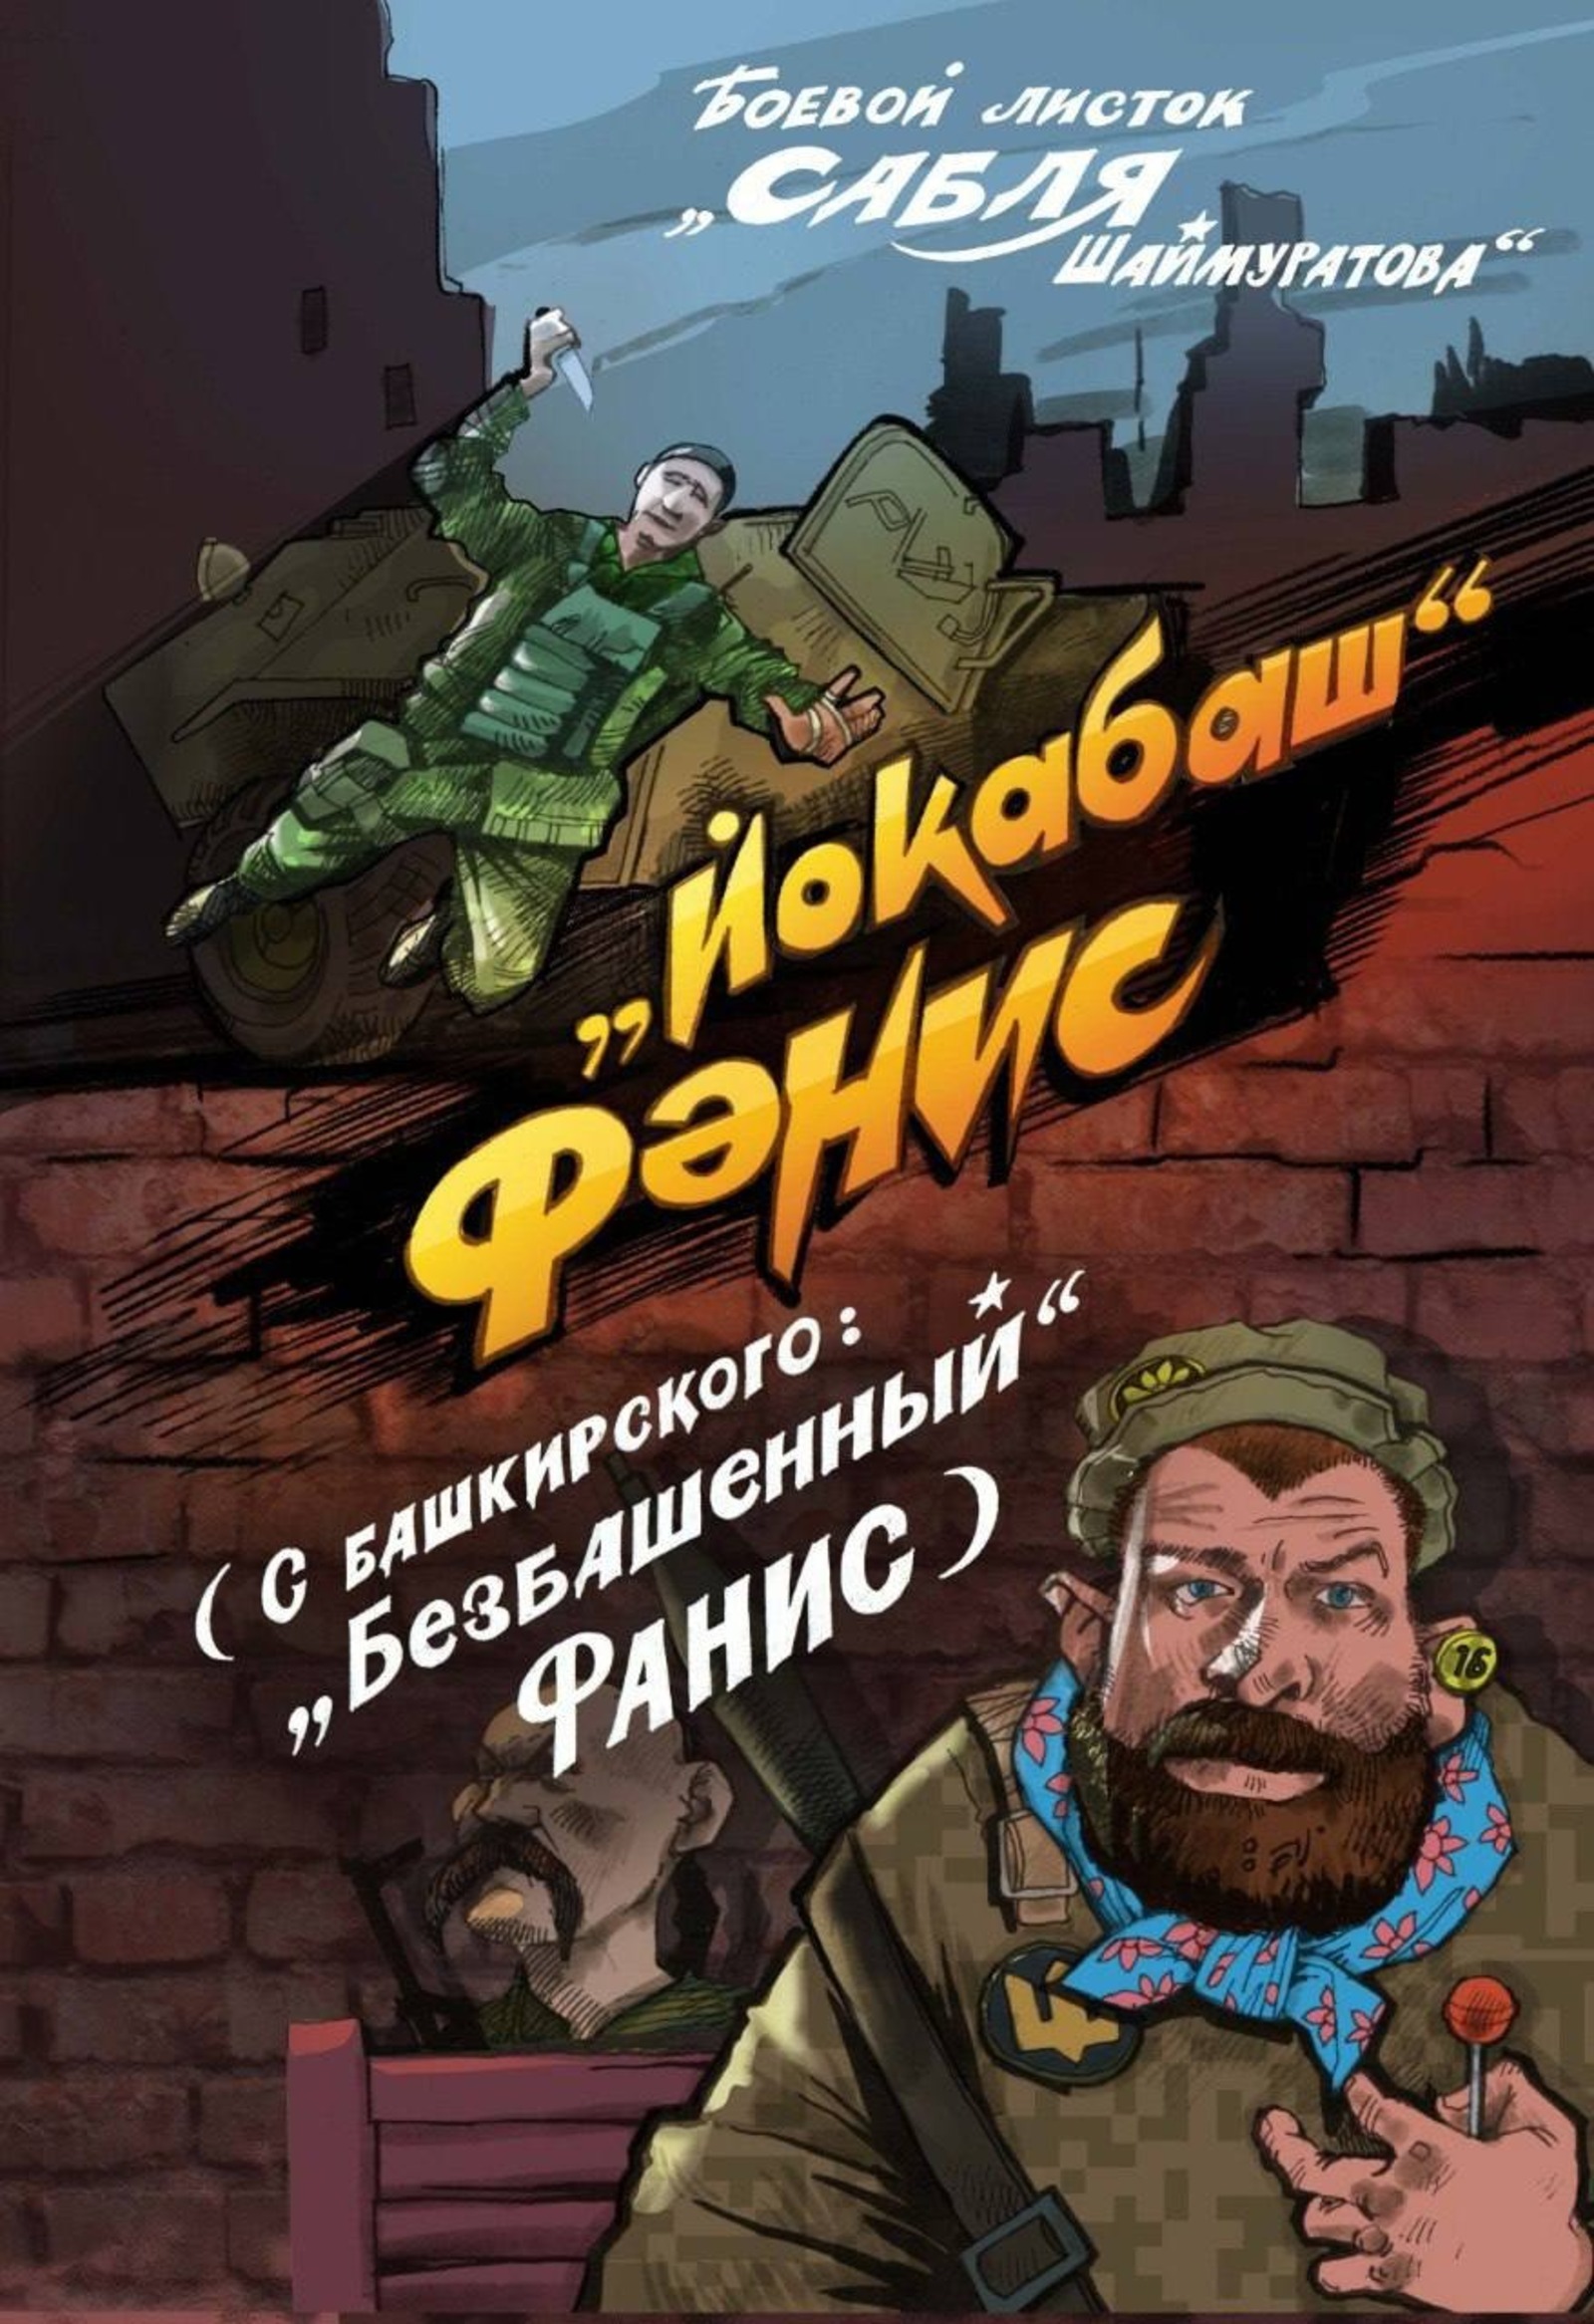 Отважный боец  Фанис Хусаинов из Татышлинского района Башкирии, угнавший бронетранспортер, стал героем комикса